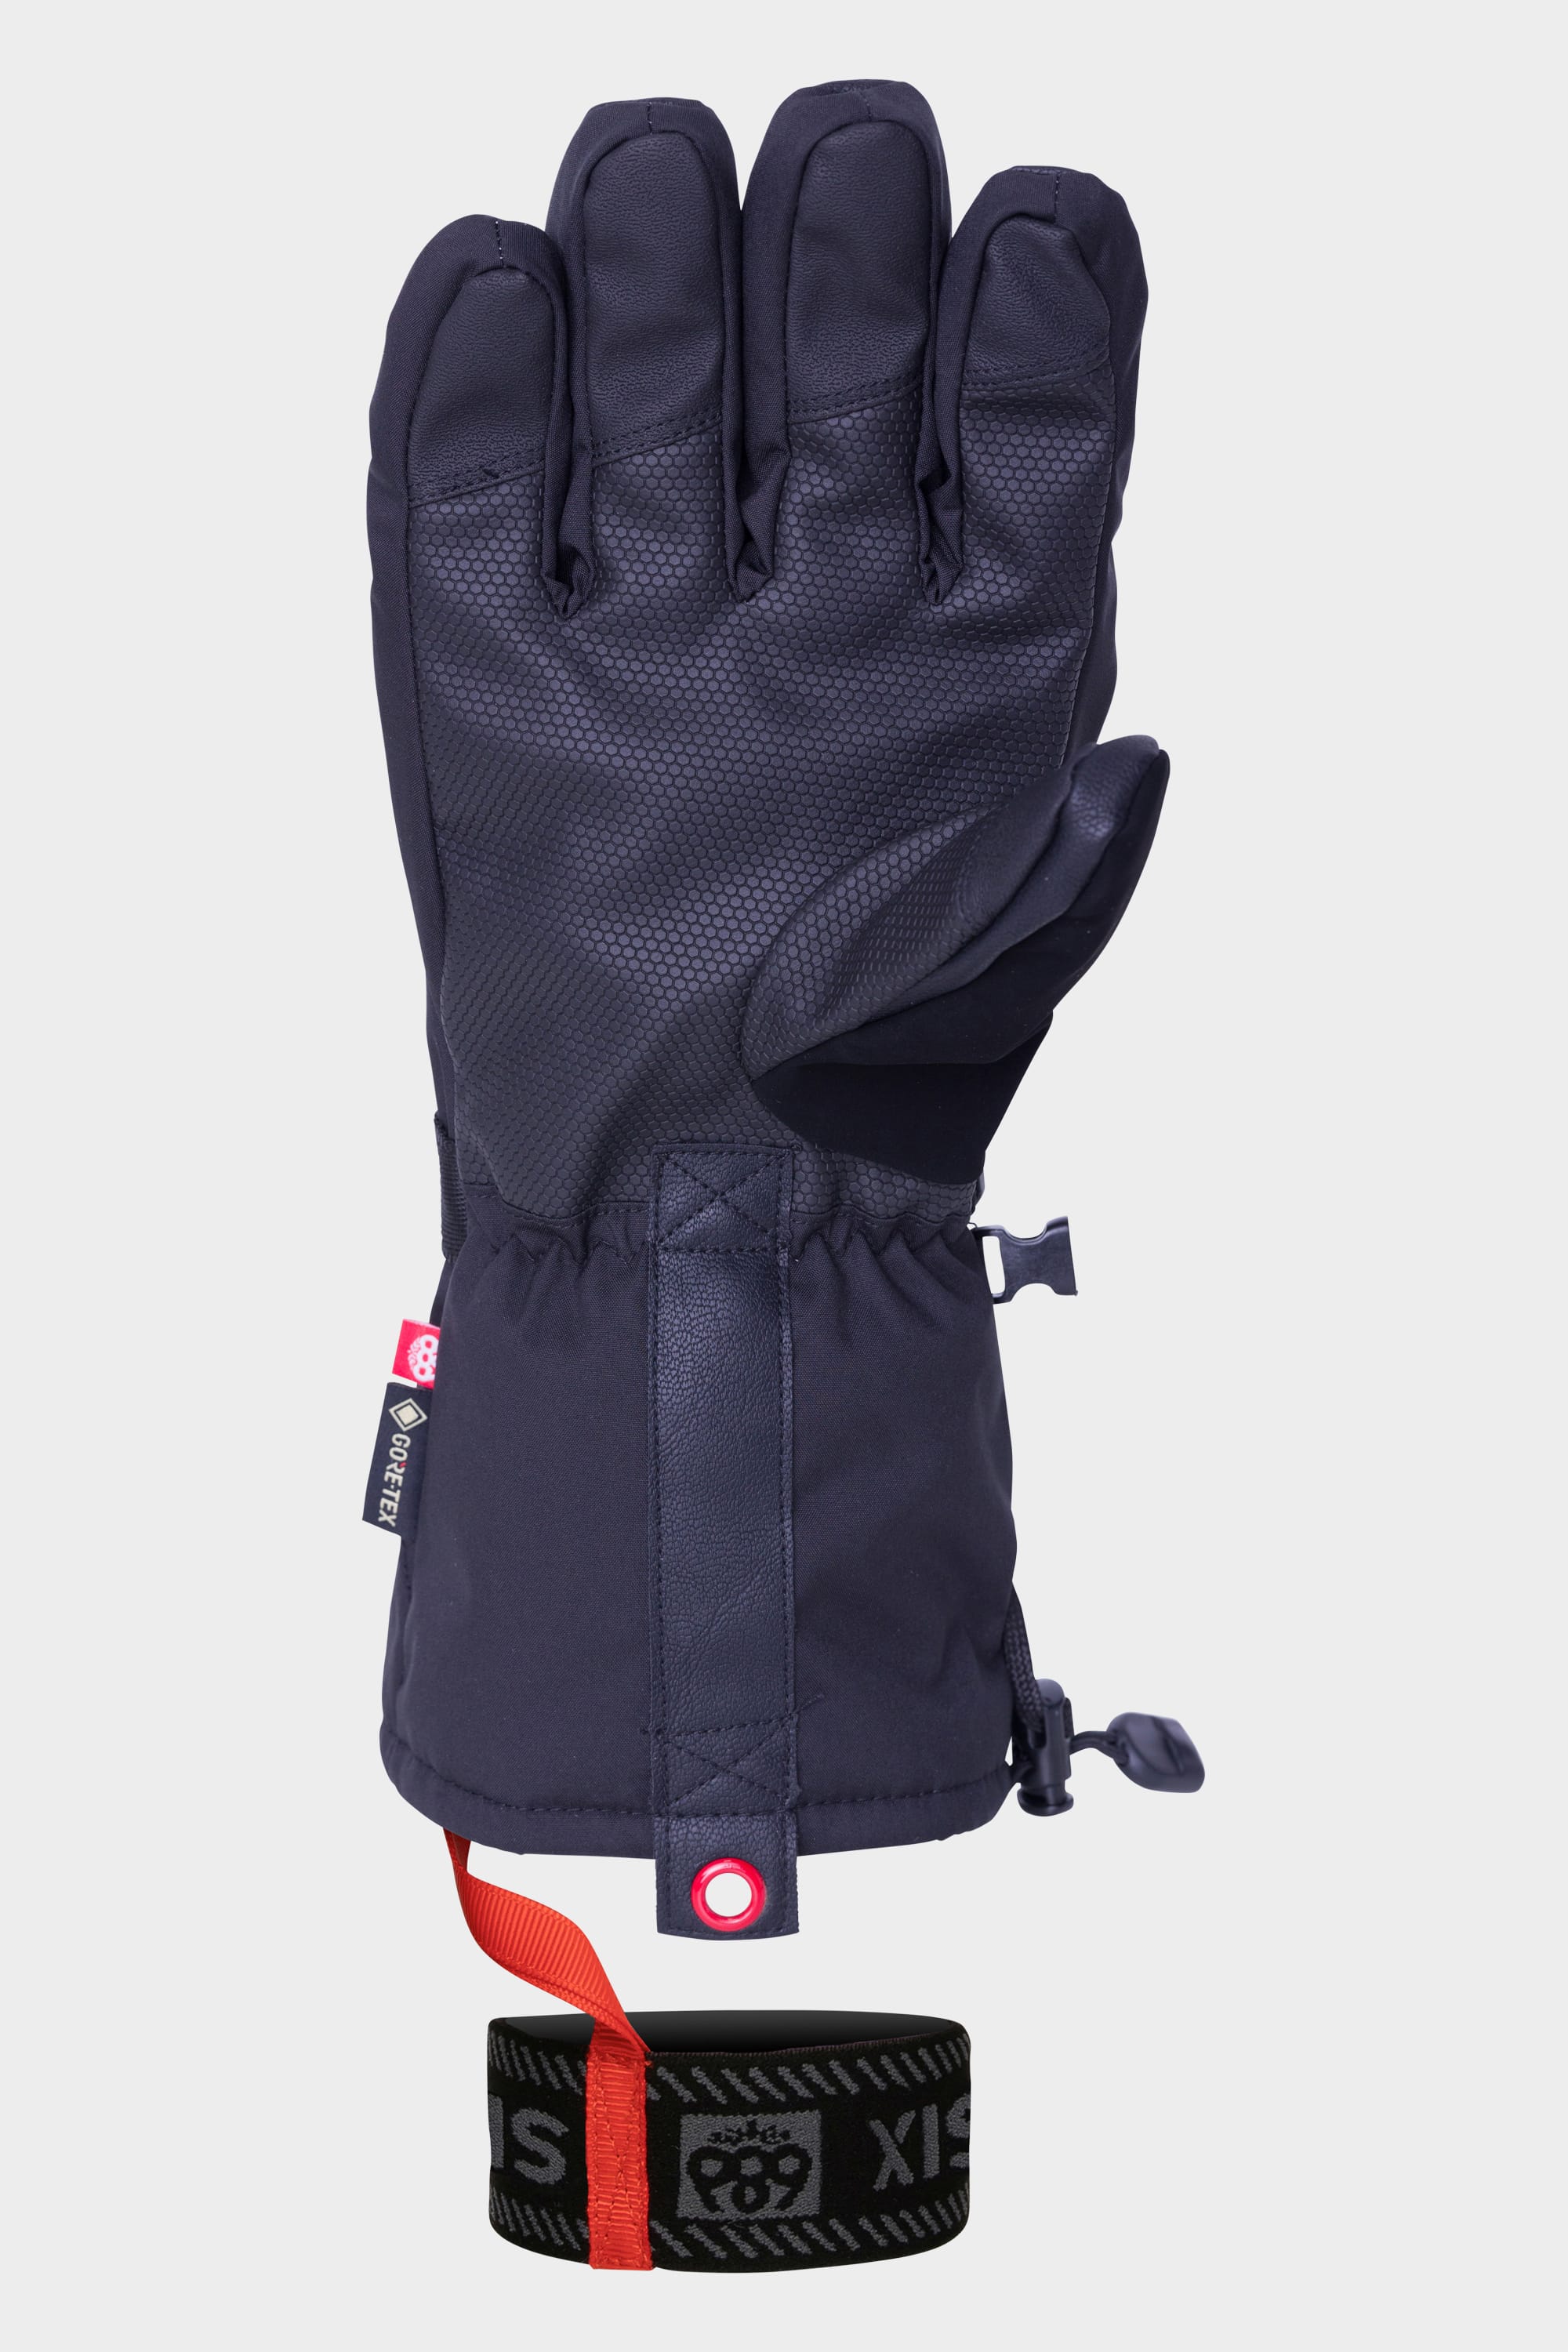 686 Men's GORE-TEX SMARTY 3-in-1 Gauntlet Glove